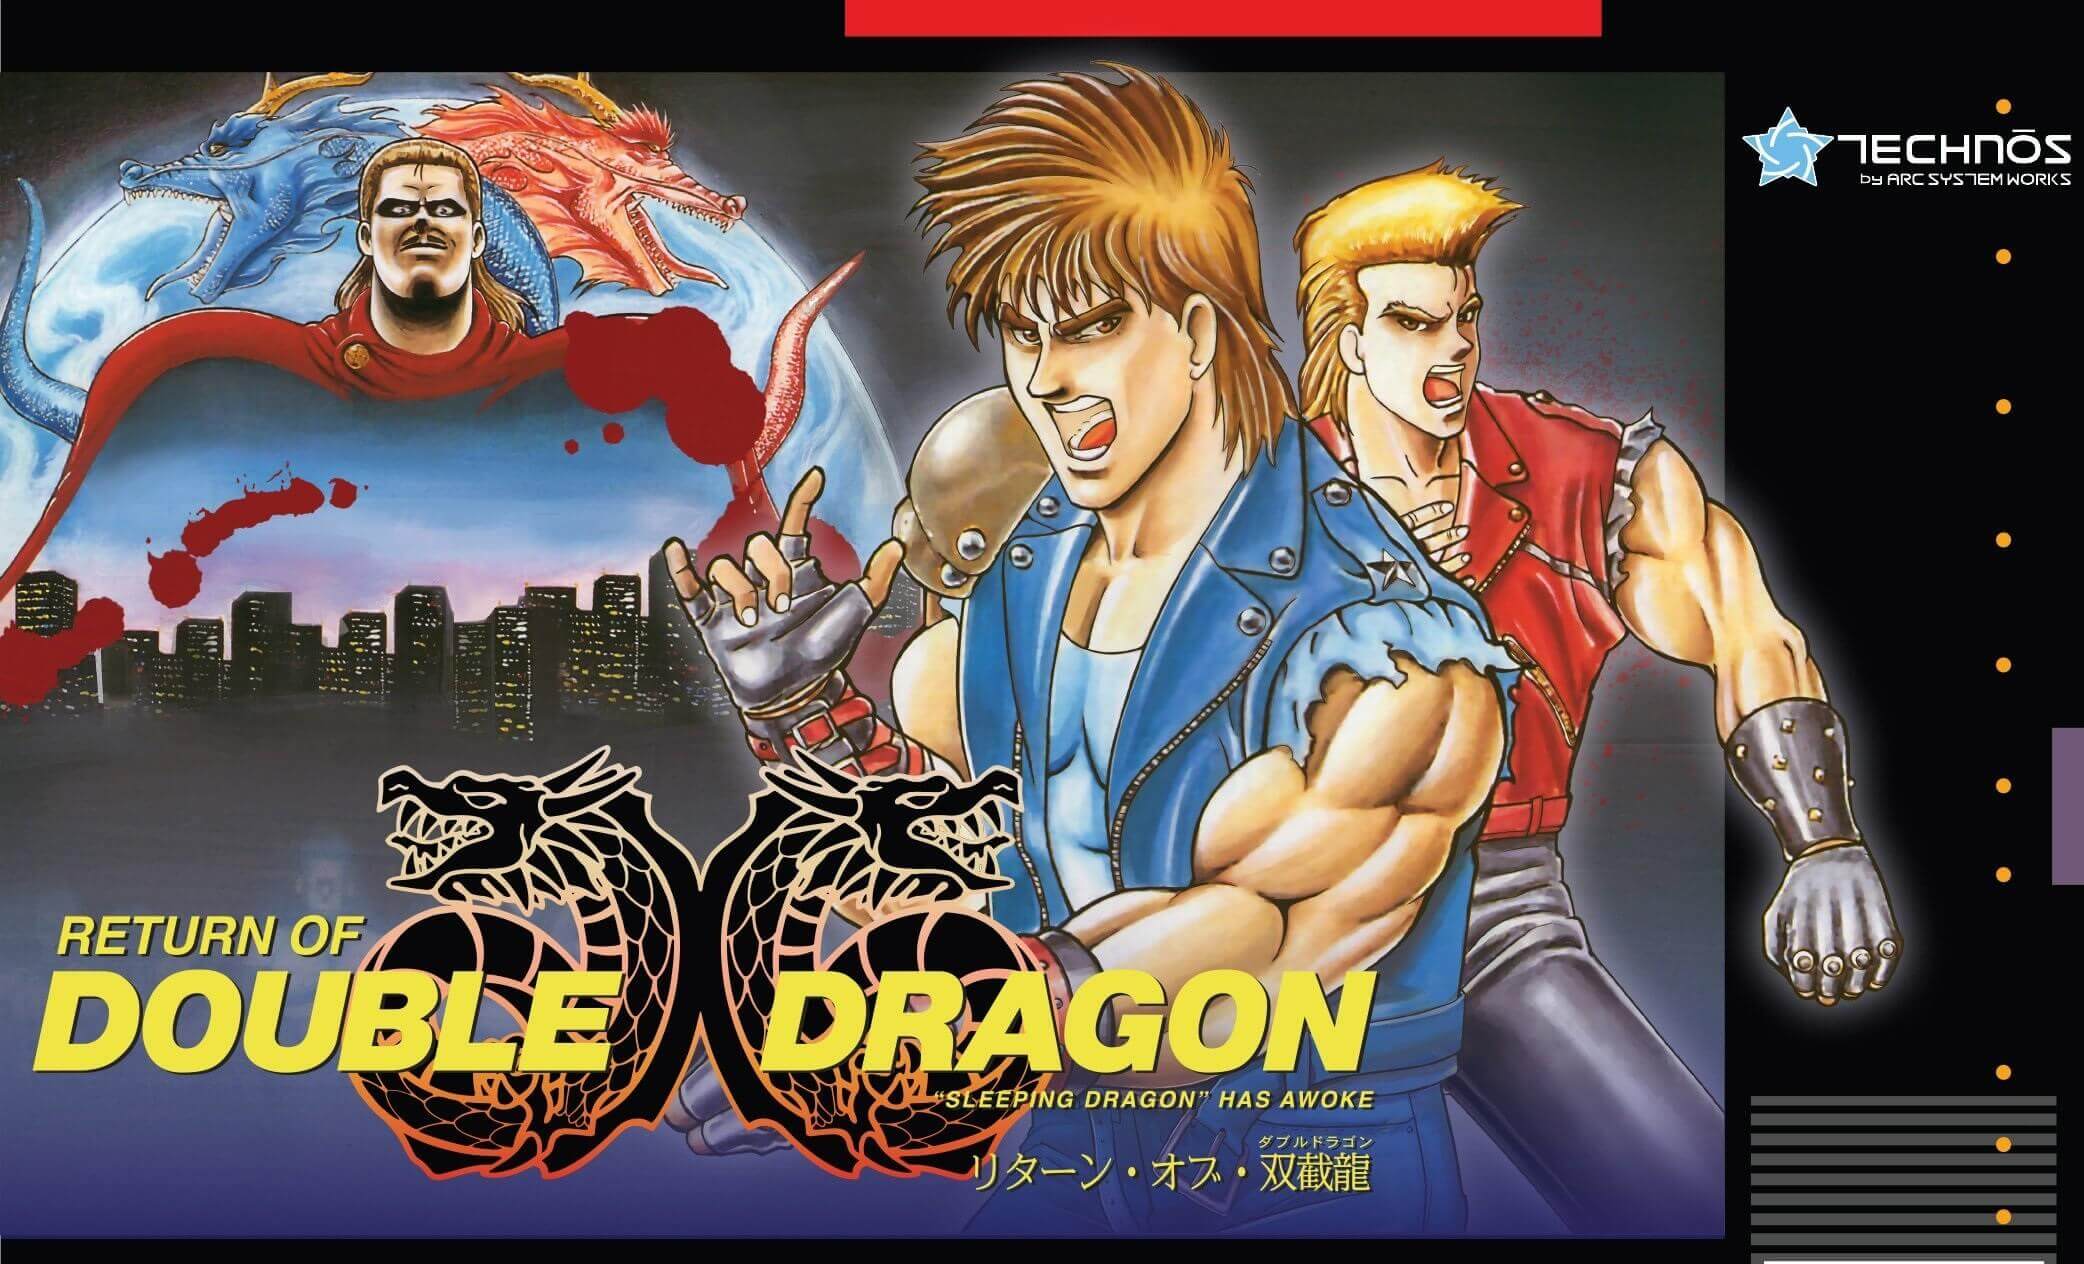 [Act.] Return of Double Dragon finalmente llegará a SNES en Norteamérica el 19 de julio